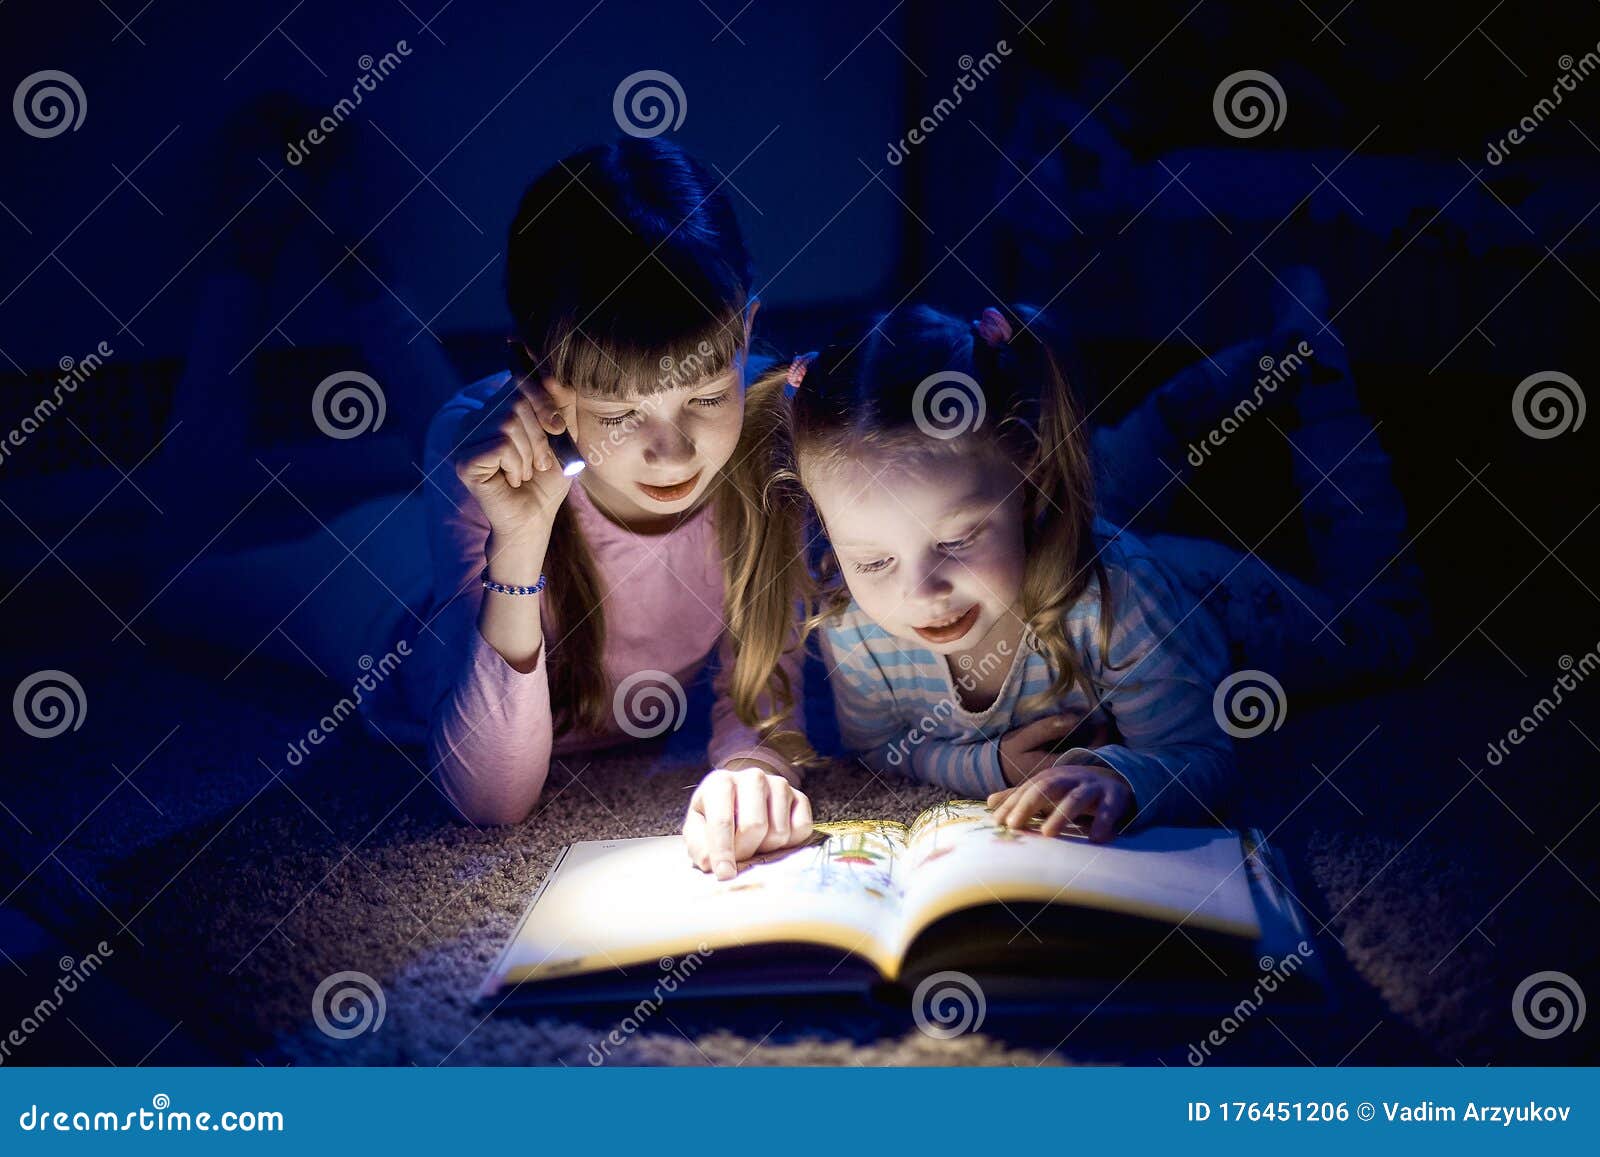 My sister to read books. Ребенок читает в темной комнате. Чтение книги под одеялом. Стало в комнате темно читать книжку.